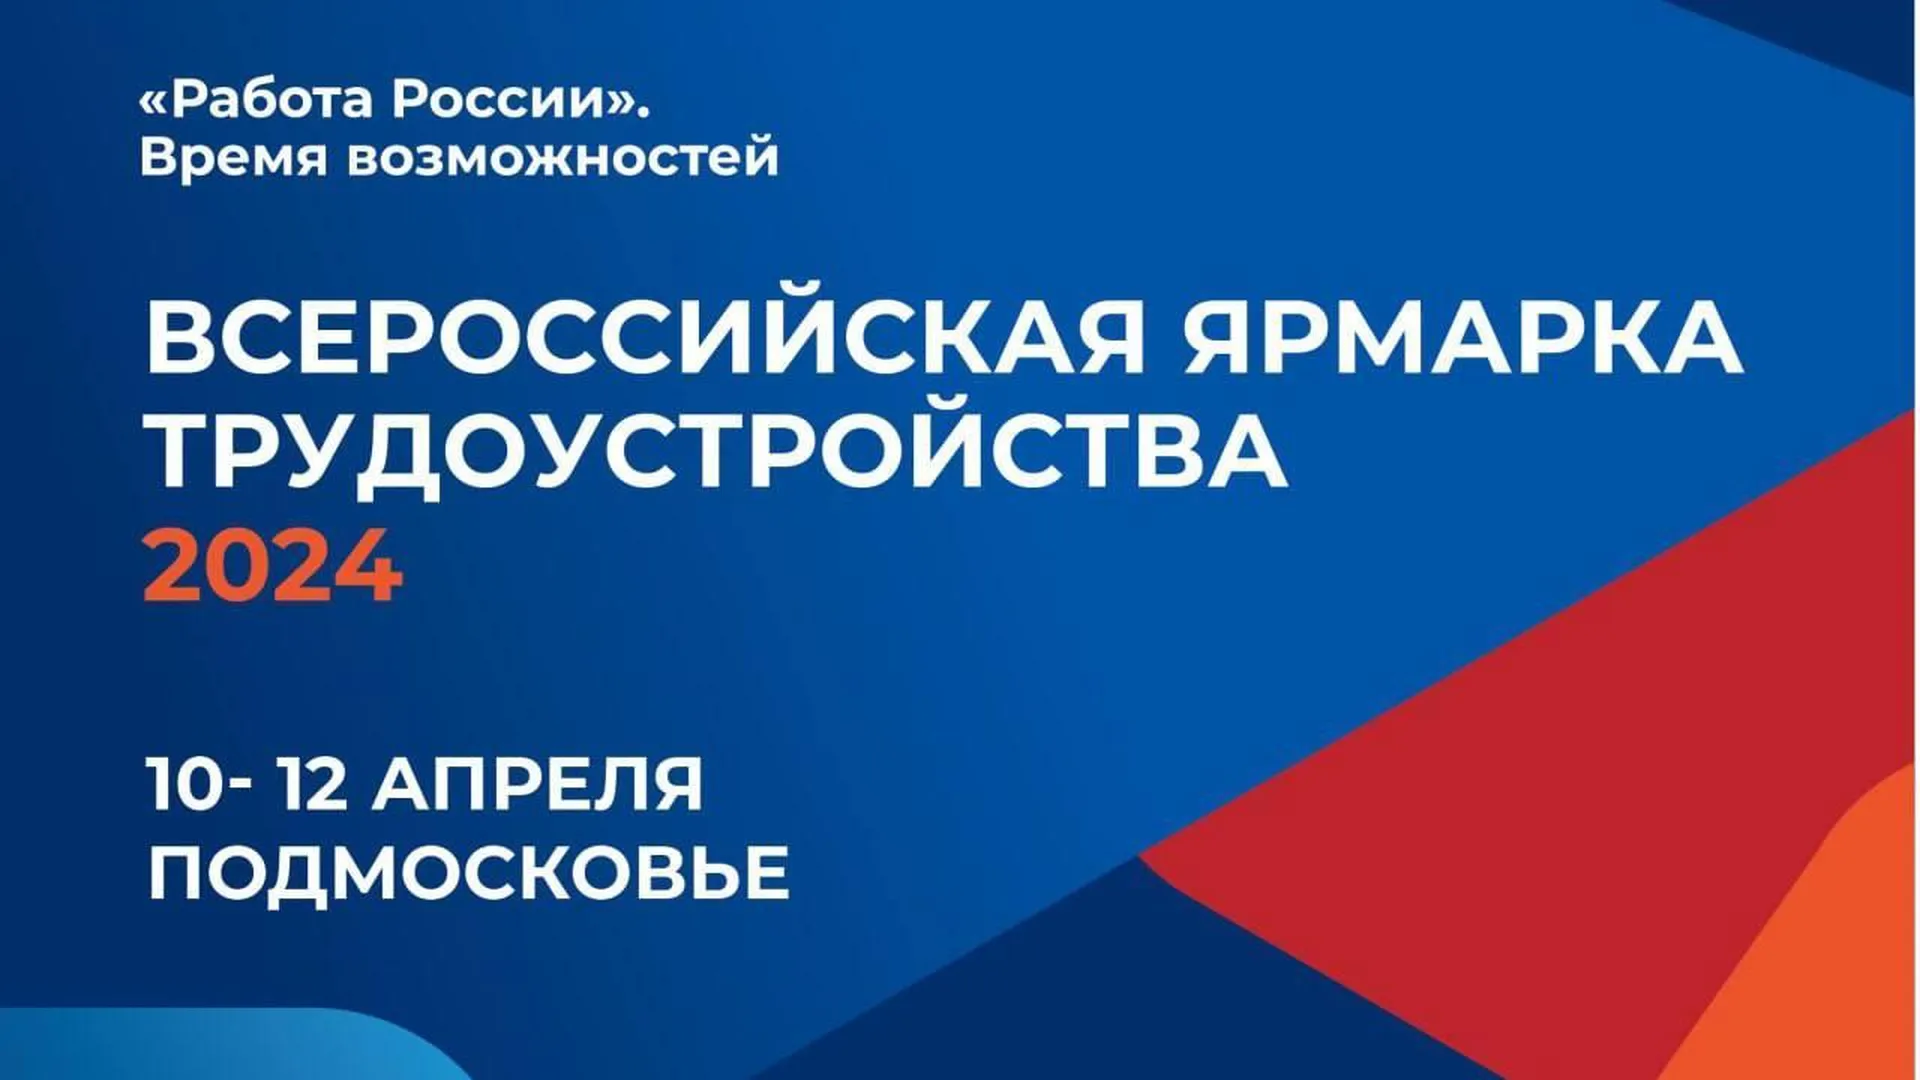 Более 200 предприятий Подмосковья представят вакансии на ярмарке трудоустройства 10 апреля